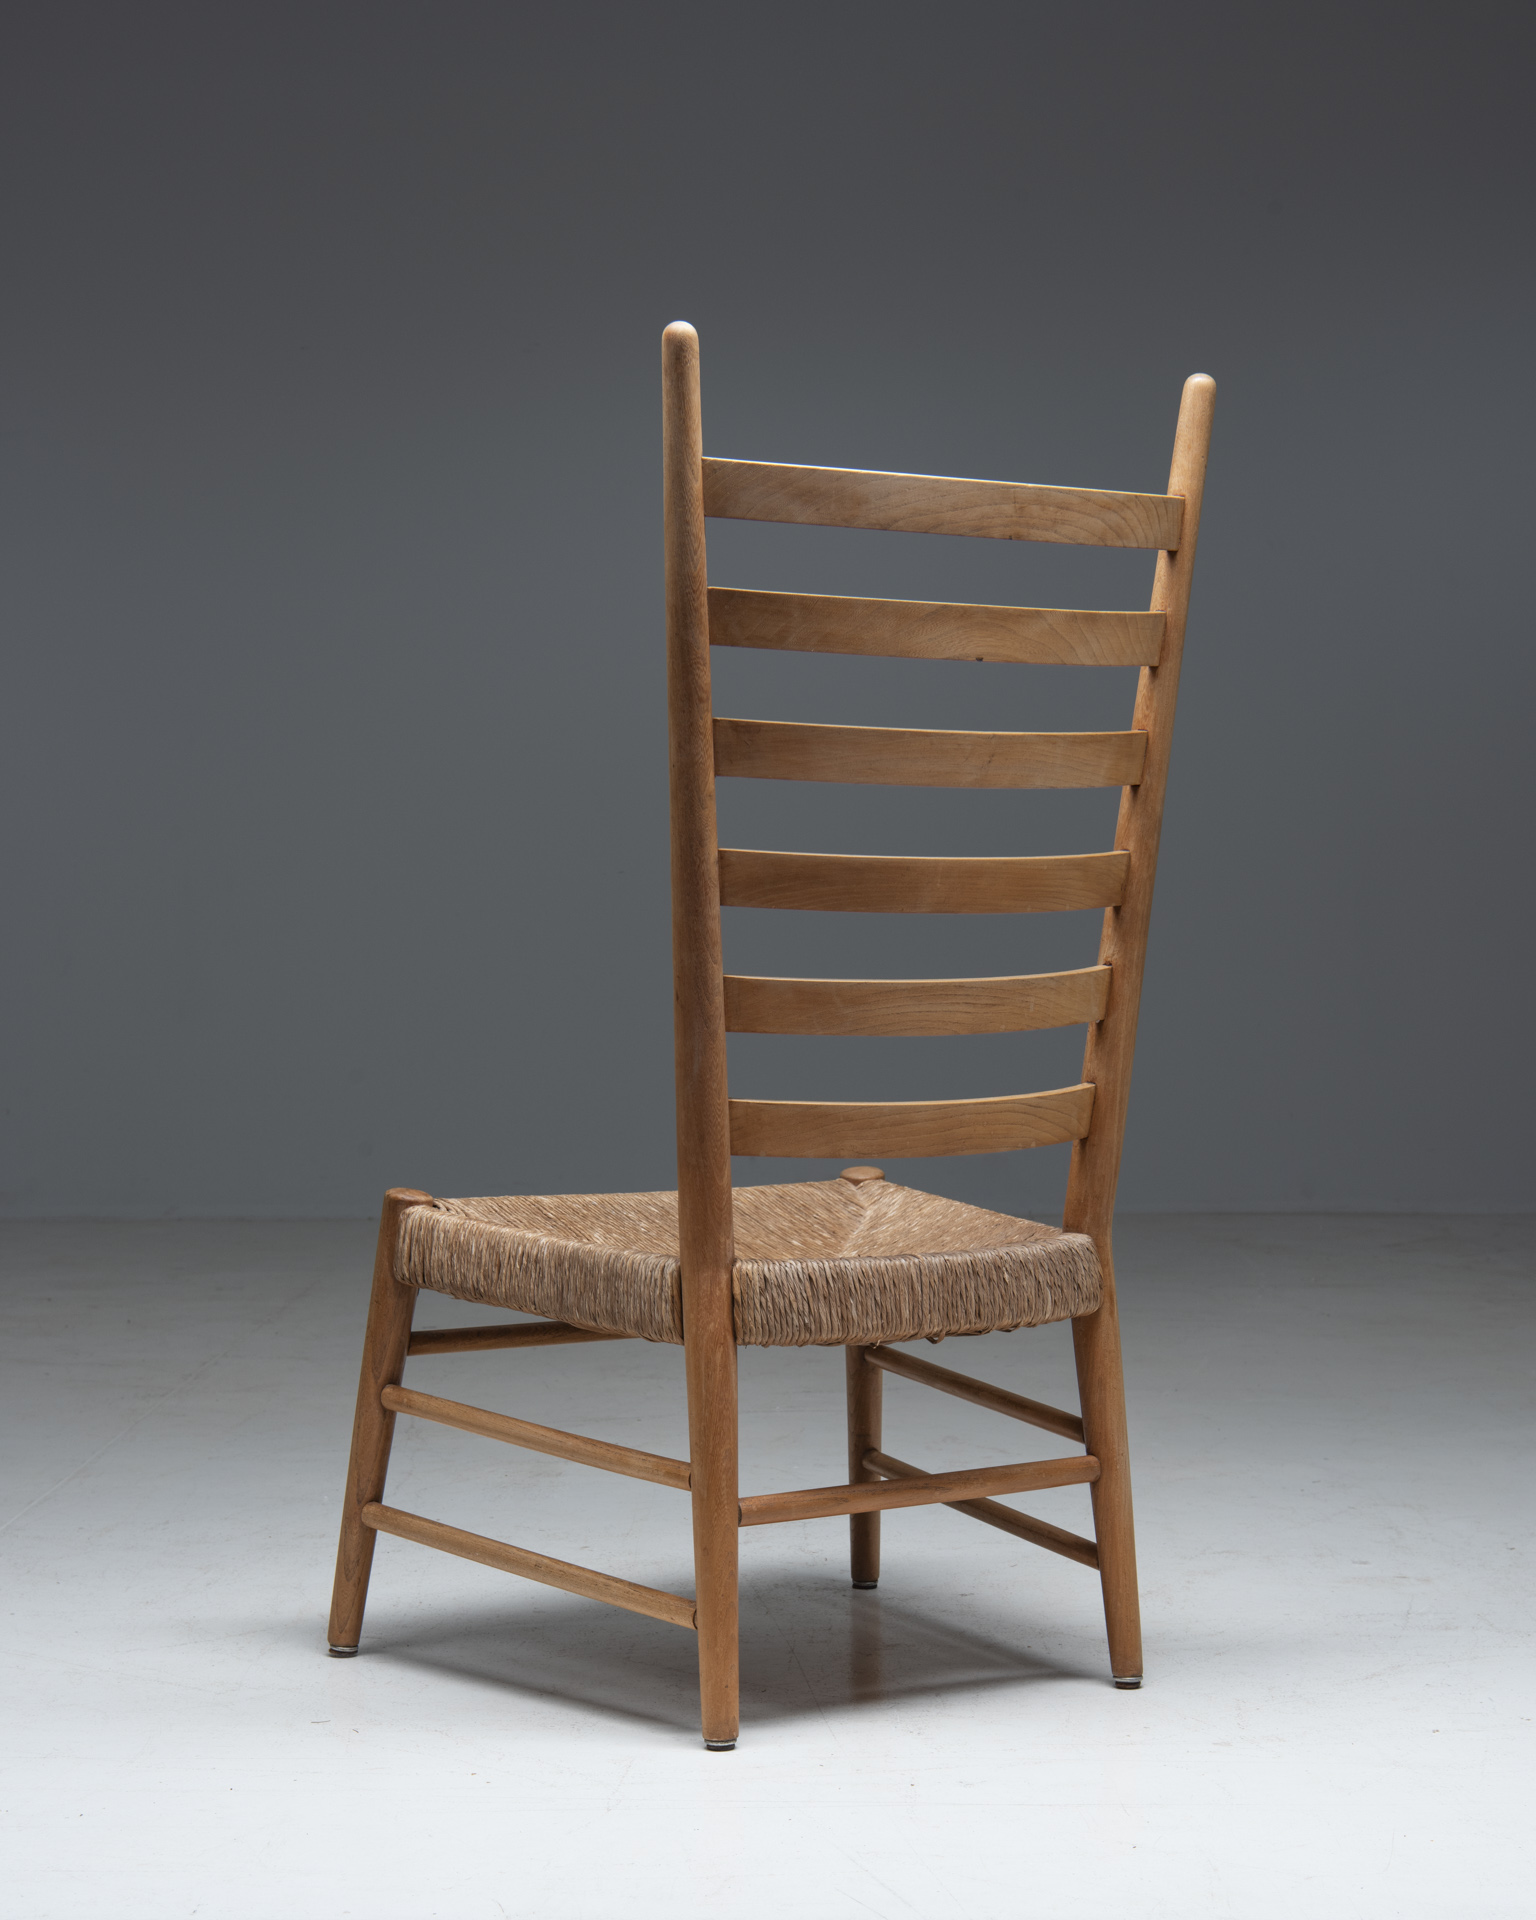 3435fauteuil-stoel-met-biezenkoord-en-licht-hout-2_3